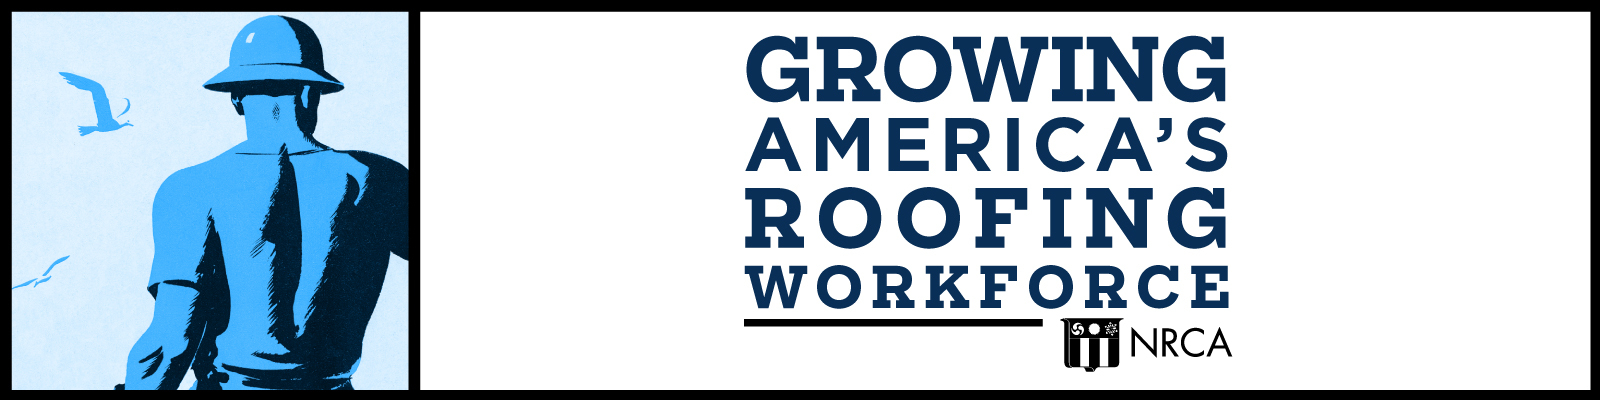 Growing America’s Roofing Workforce